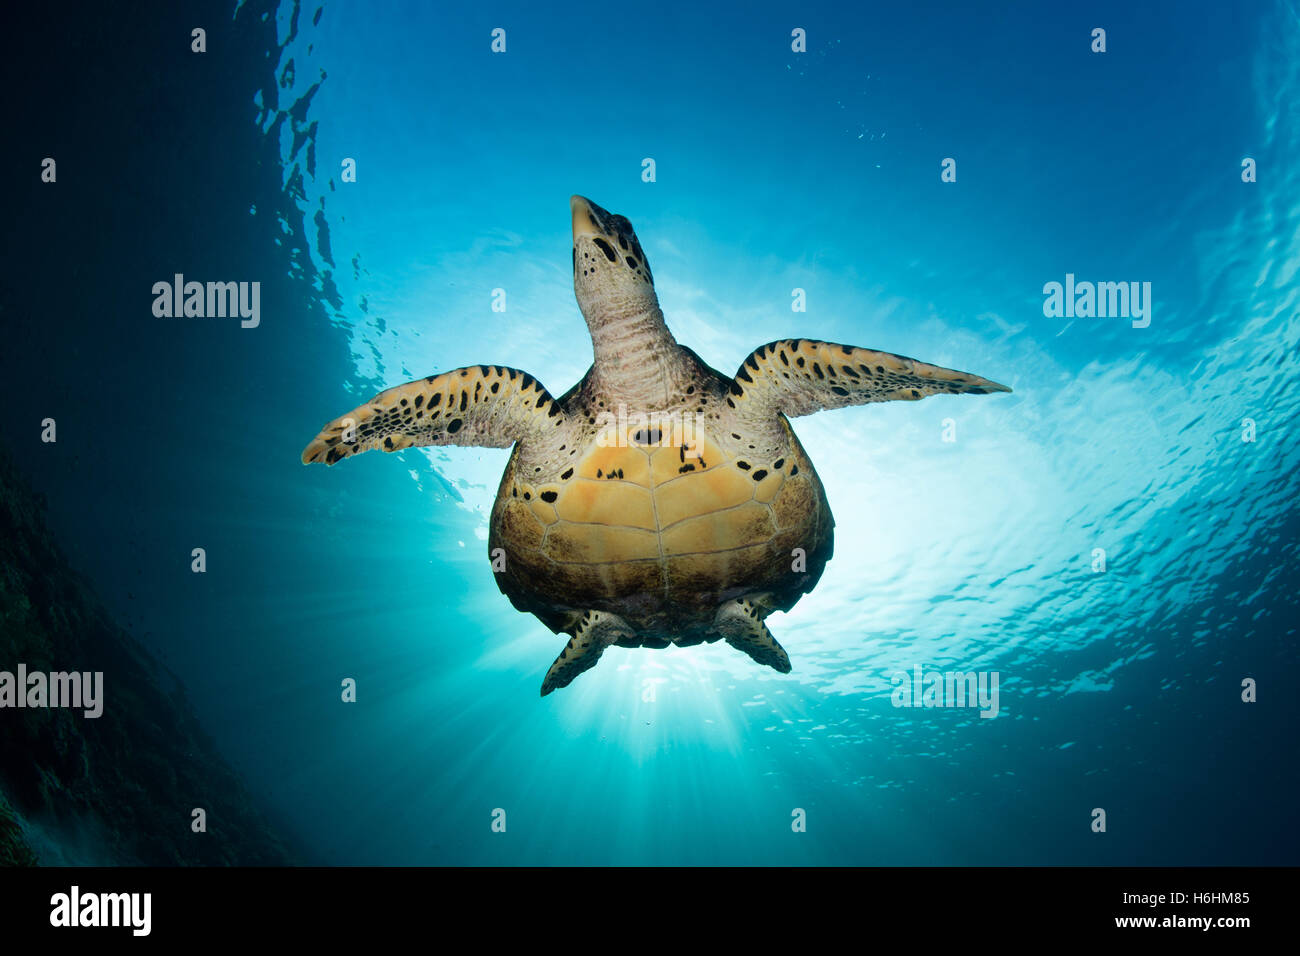 Eine echte Karettschildkröte schwimmt im klaren, blauen Wasser in Raja Ampat, Indonesien. Dieses seltene Reptil ist eine bedrohte Art. Stockfoto